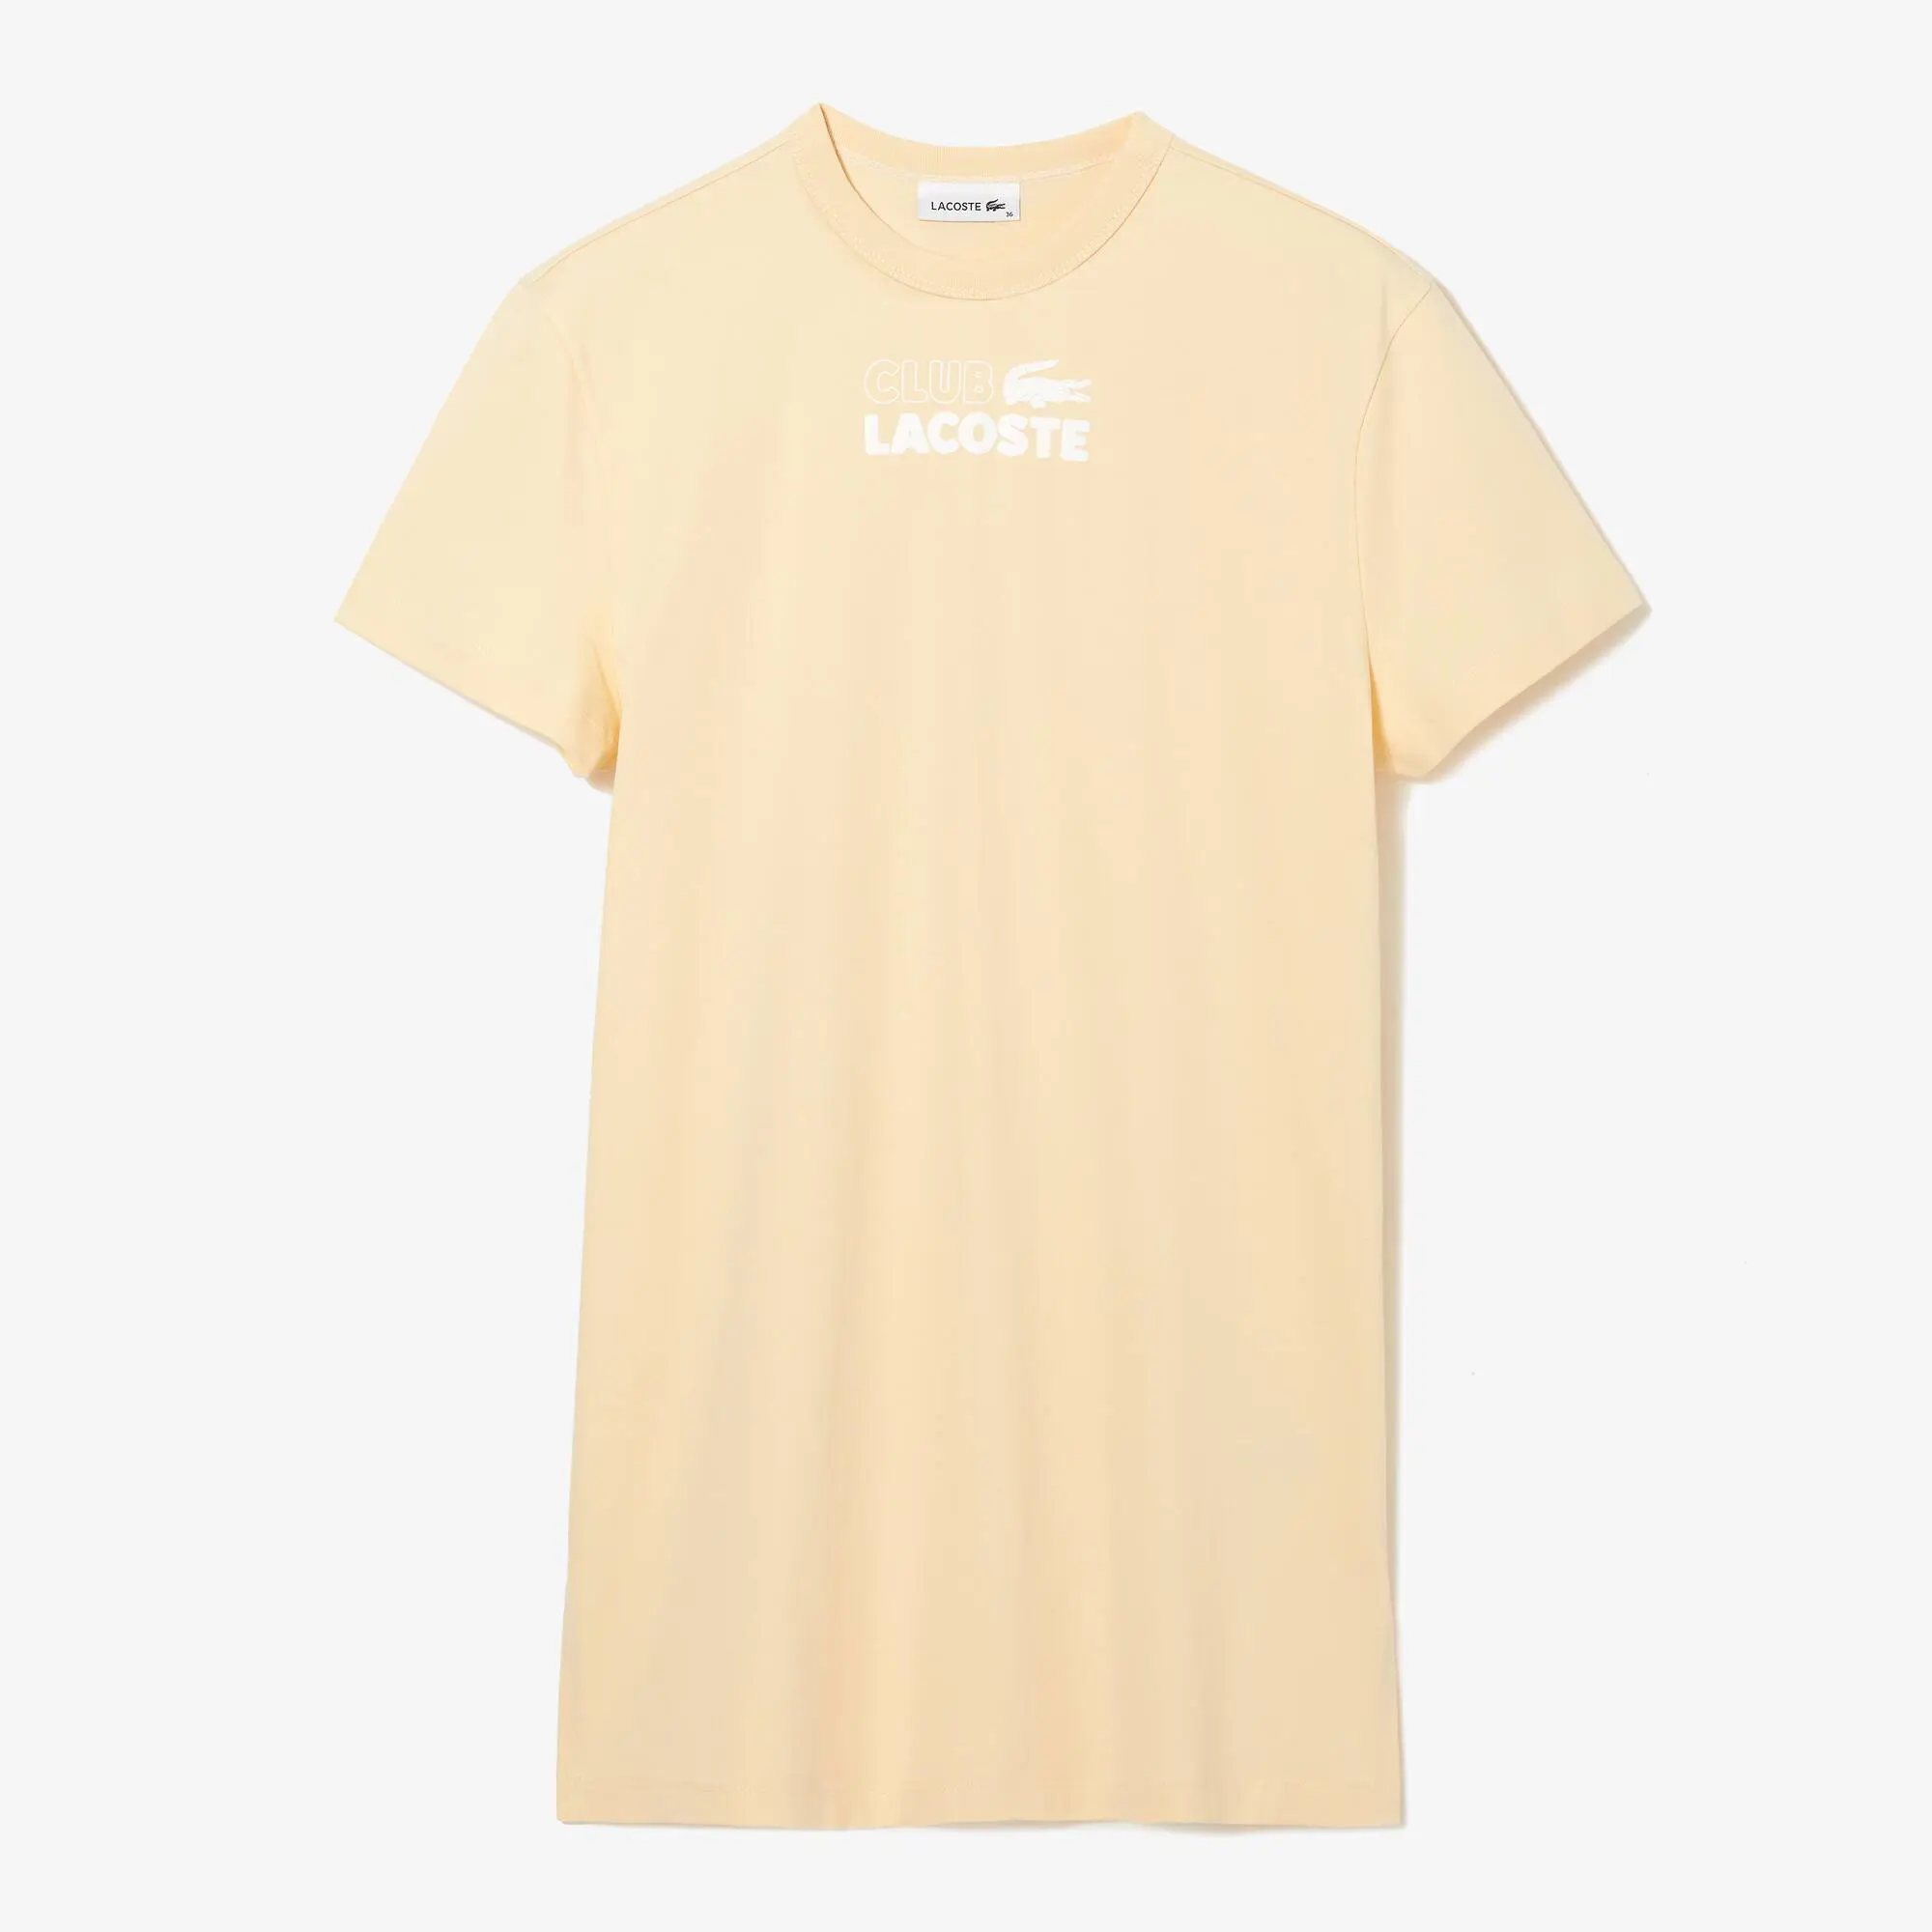 Lacoste T-shirt tipo vestido com estampado de algodão orgânico Lacoste para senhora. 2